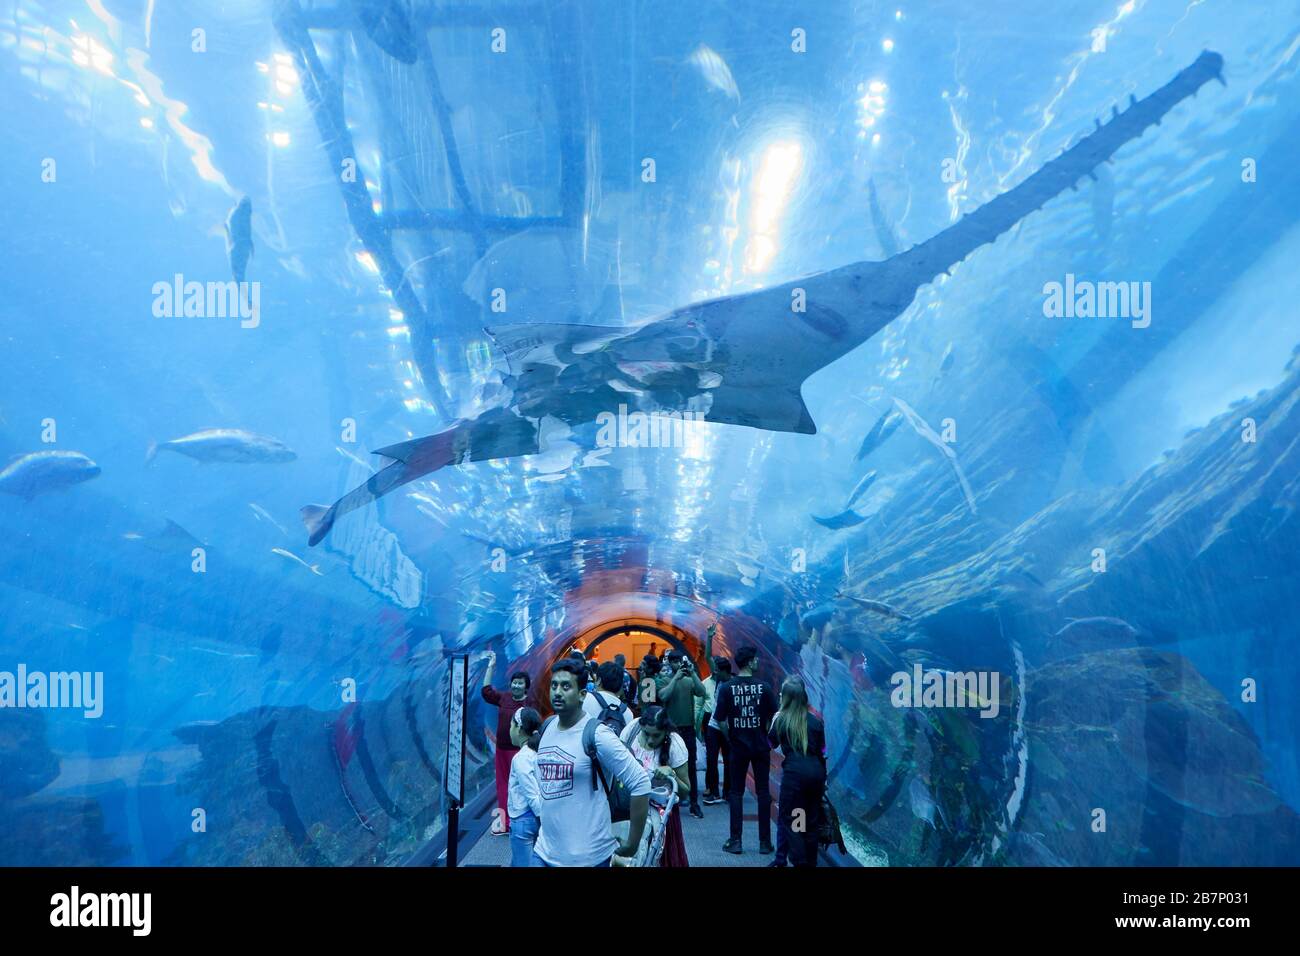 DUBAI, EMIRATI ARABI UNITI - 21 NOVEMBRE 2019: Tunnel dell'Acquario di Dubai con persone e turisti, vista a basso angolo del pesce segato Foto Stock